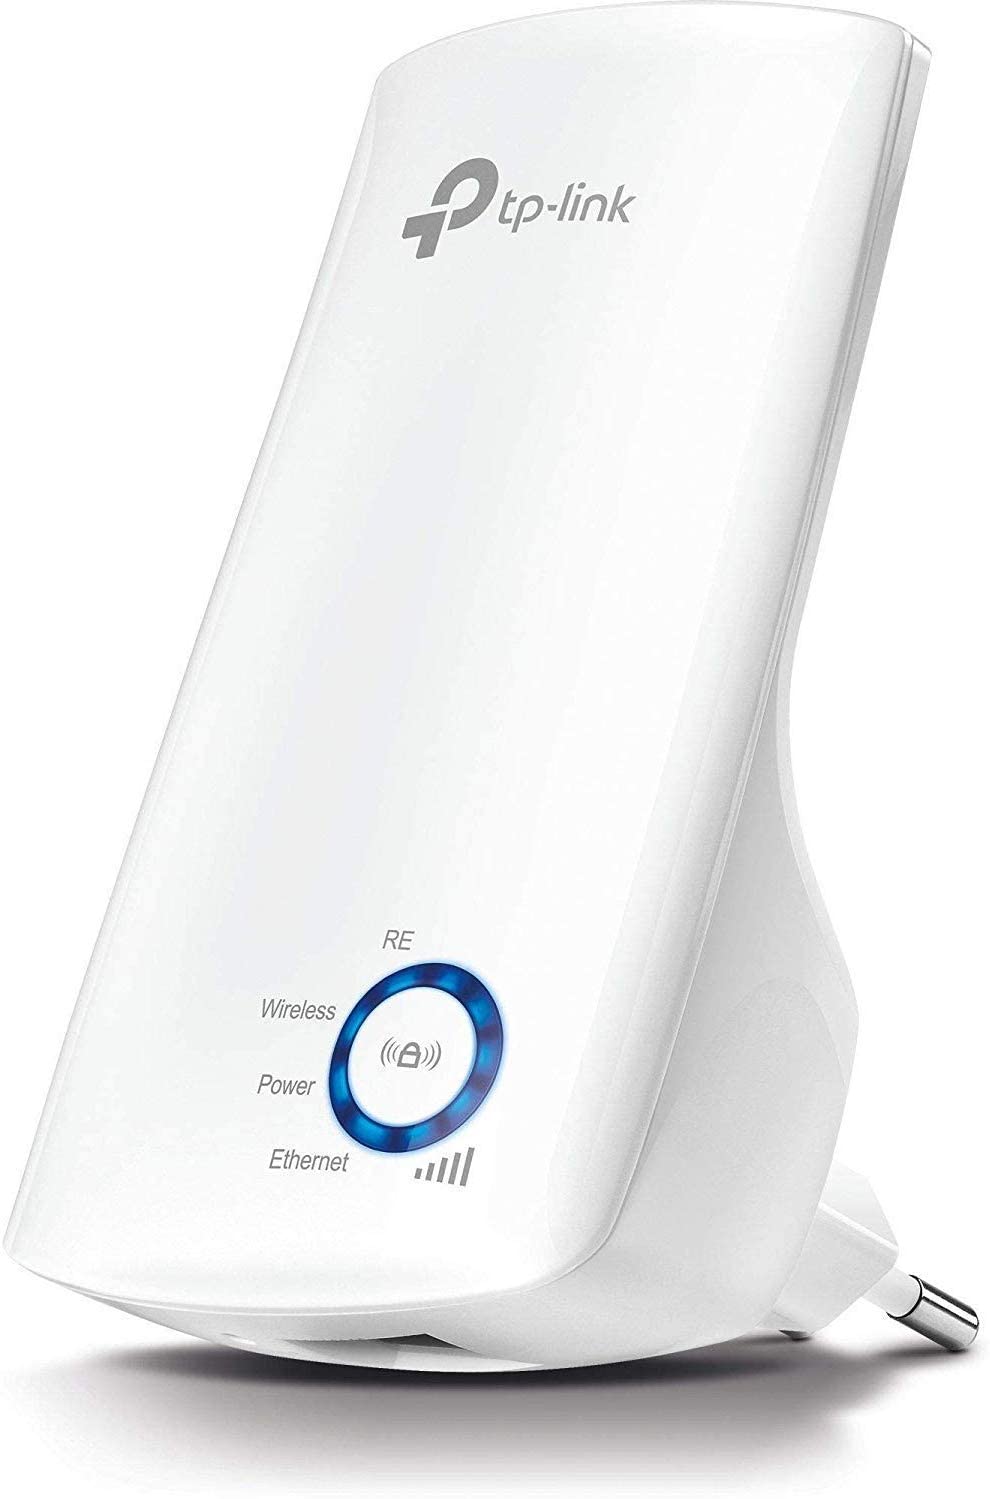 TP-Link TL-WA850RE Ripetitore Wireless Wifi Extender e Access Point, Velocità Single Band 300Mbps, Porta LAN, Potenzia la tua copertura Wi-Fi, Compatibile con tutti i modem router wifi, Bianco